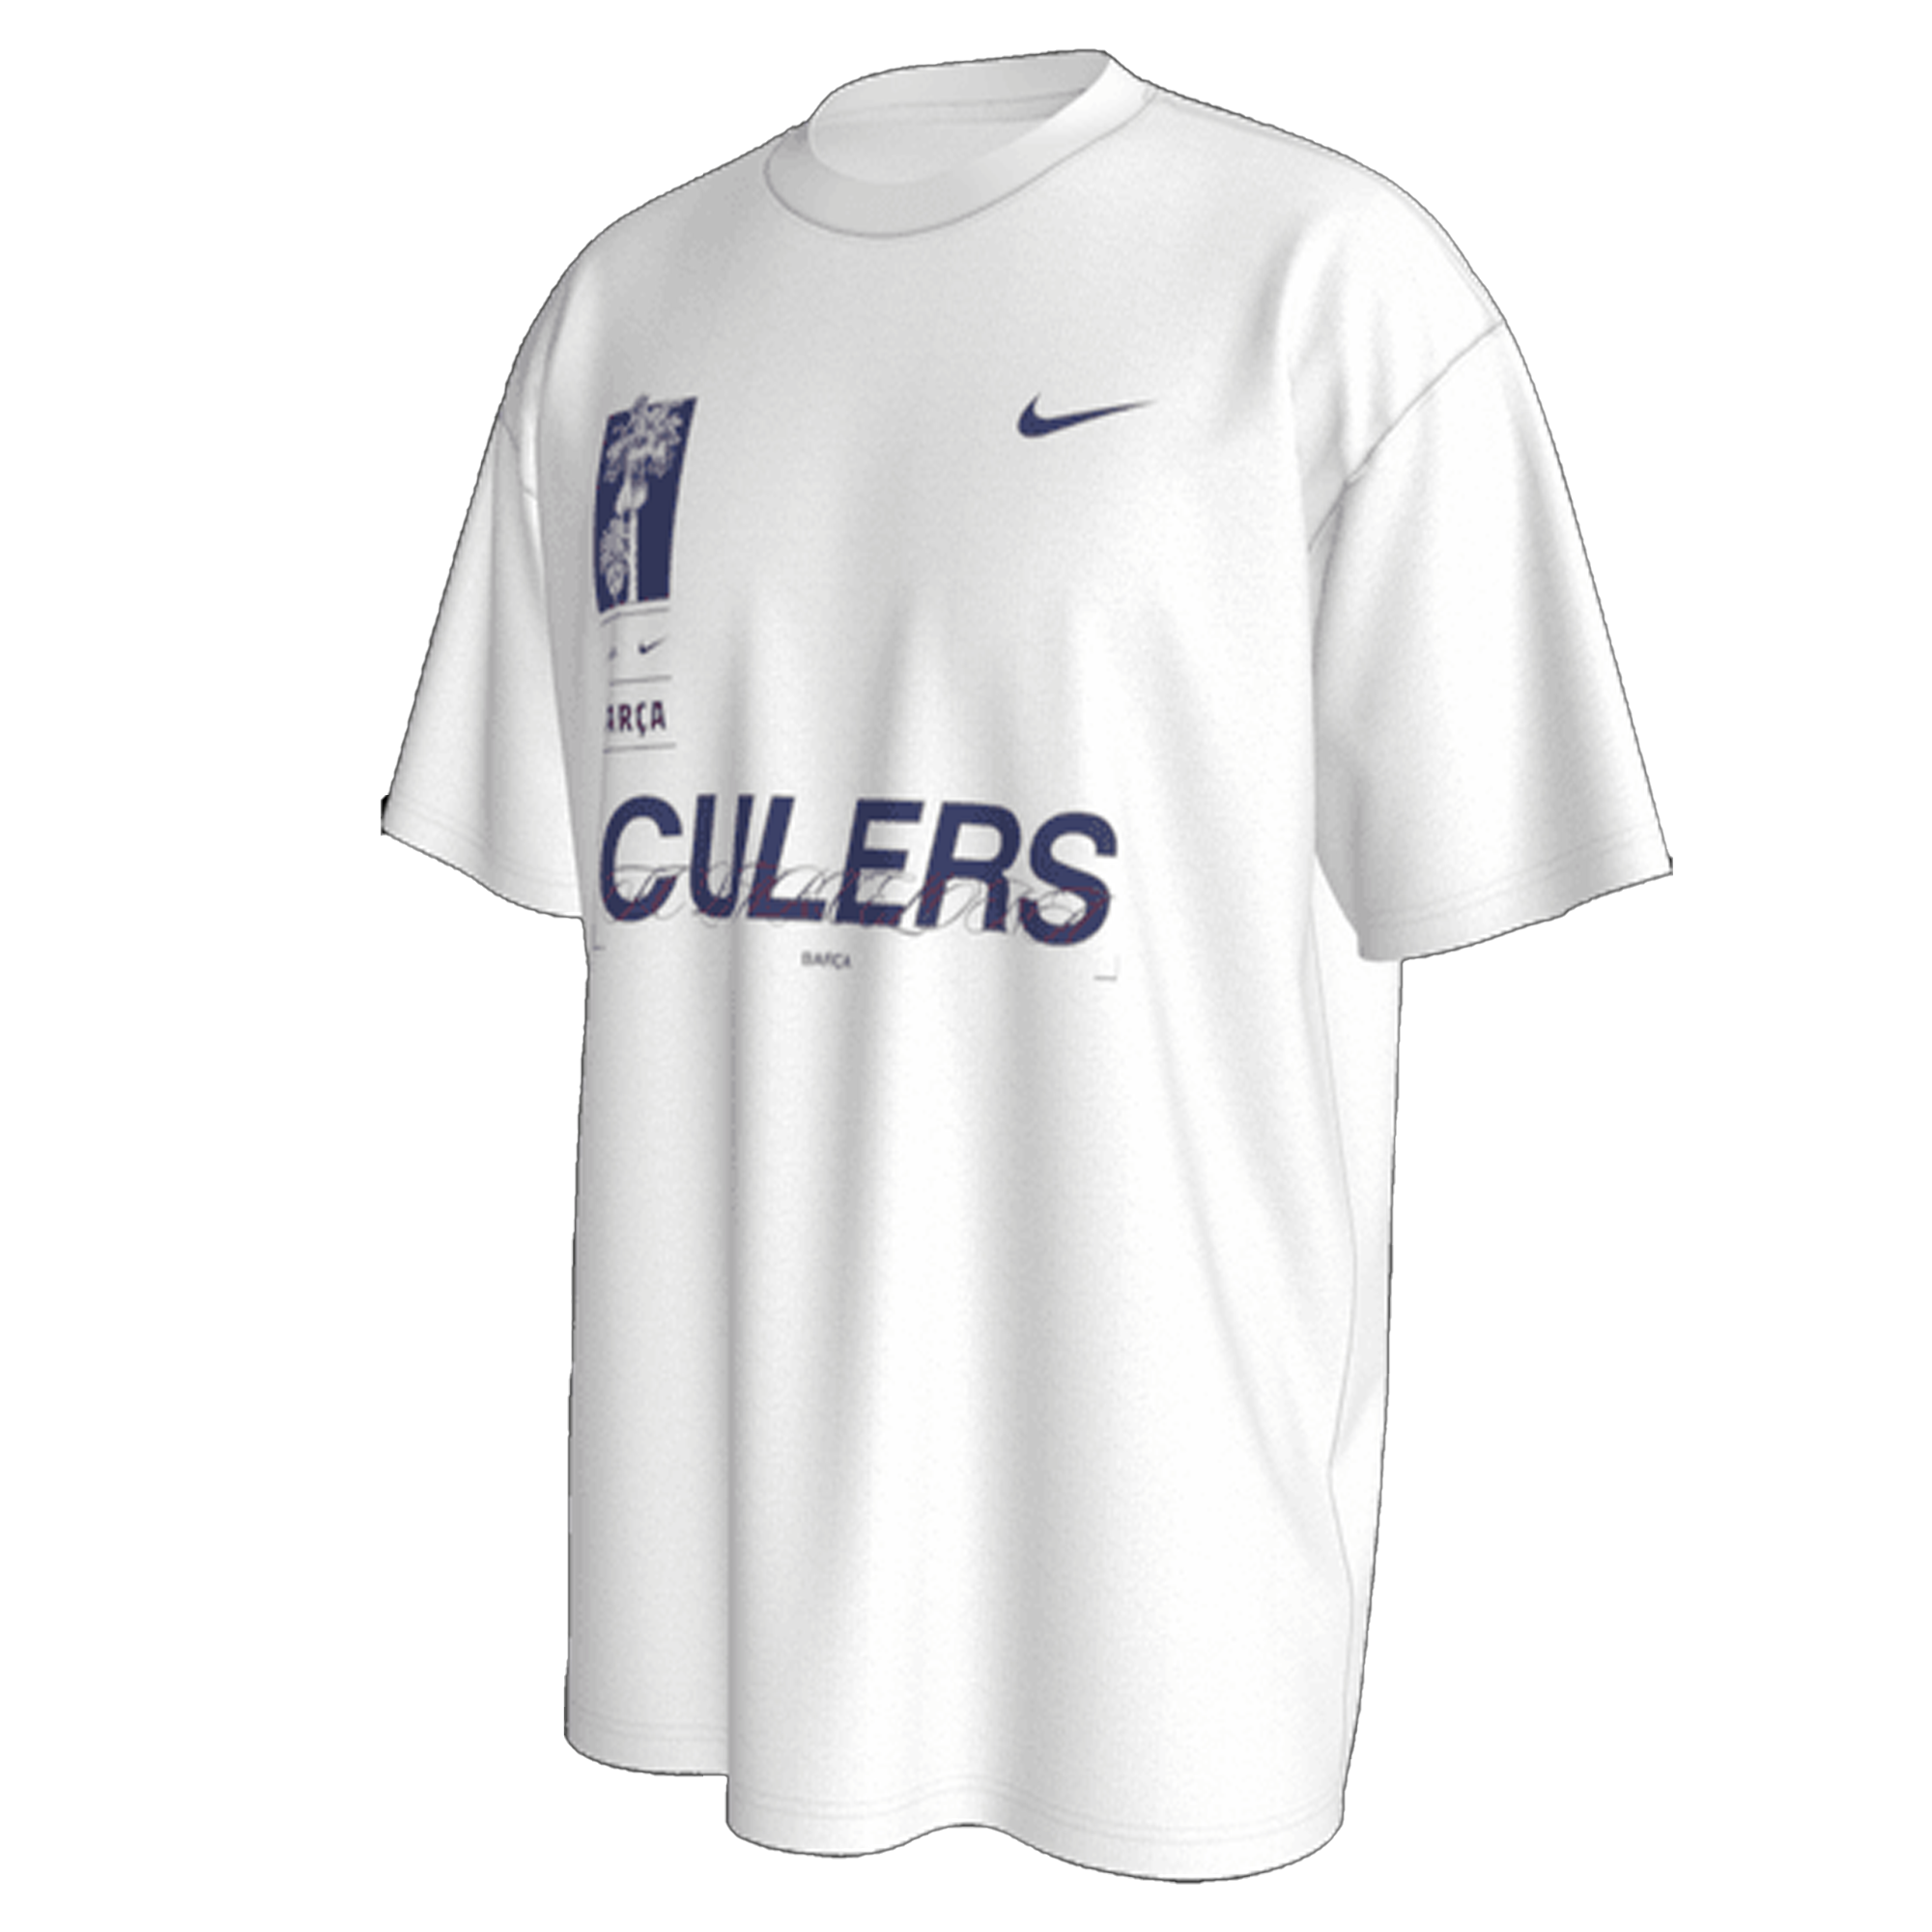 U.S. Men's Nike Max90 Soccer T-Shirt